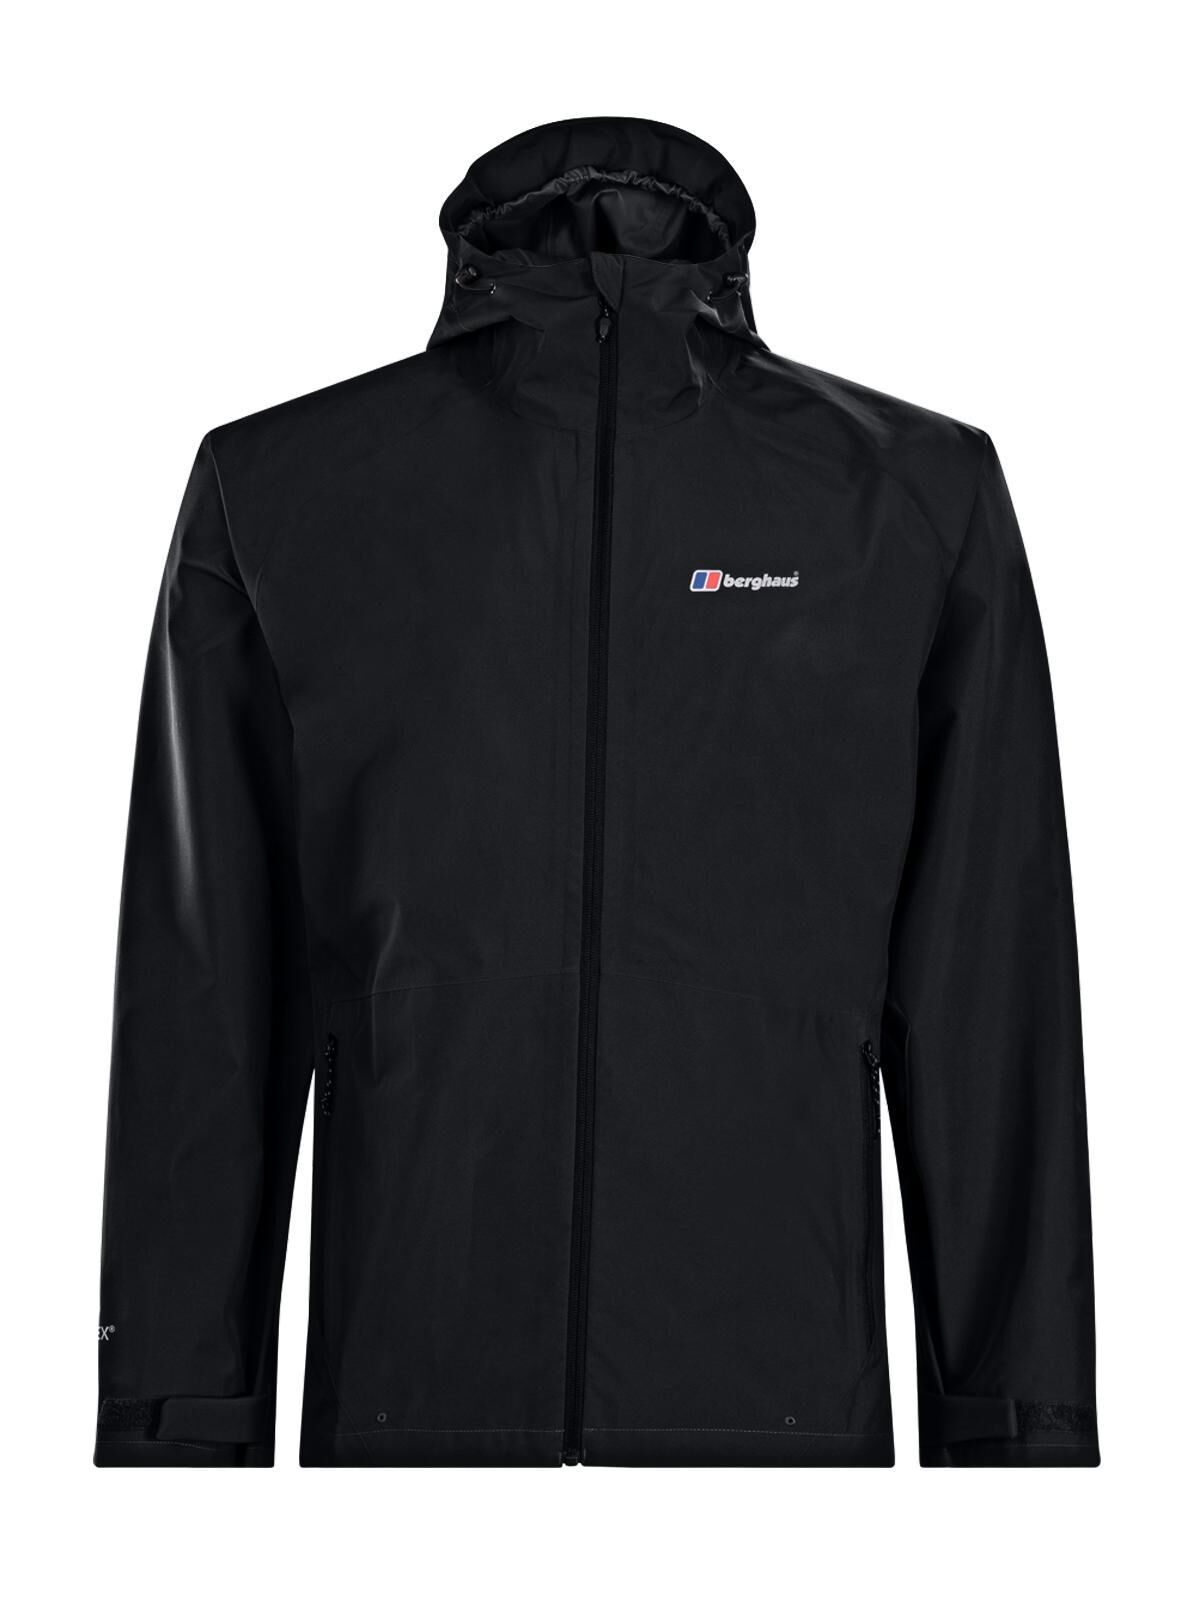 Berghaus Paclite 2.0 Waterproof Jacket - Waterproof jacket - Men's